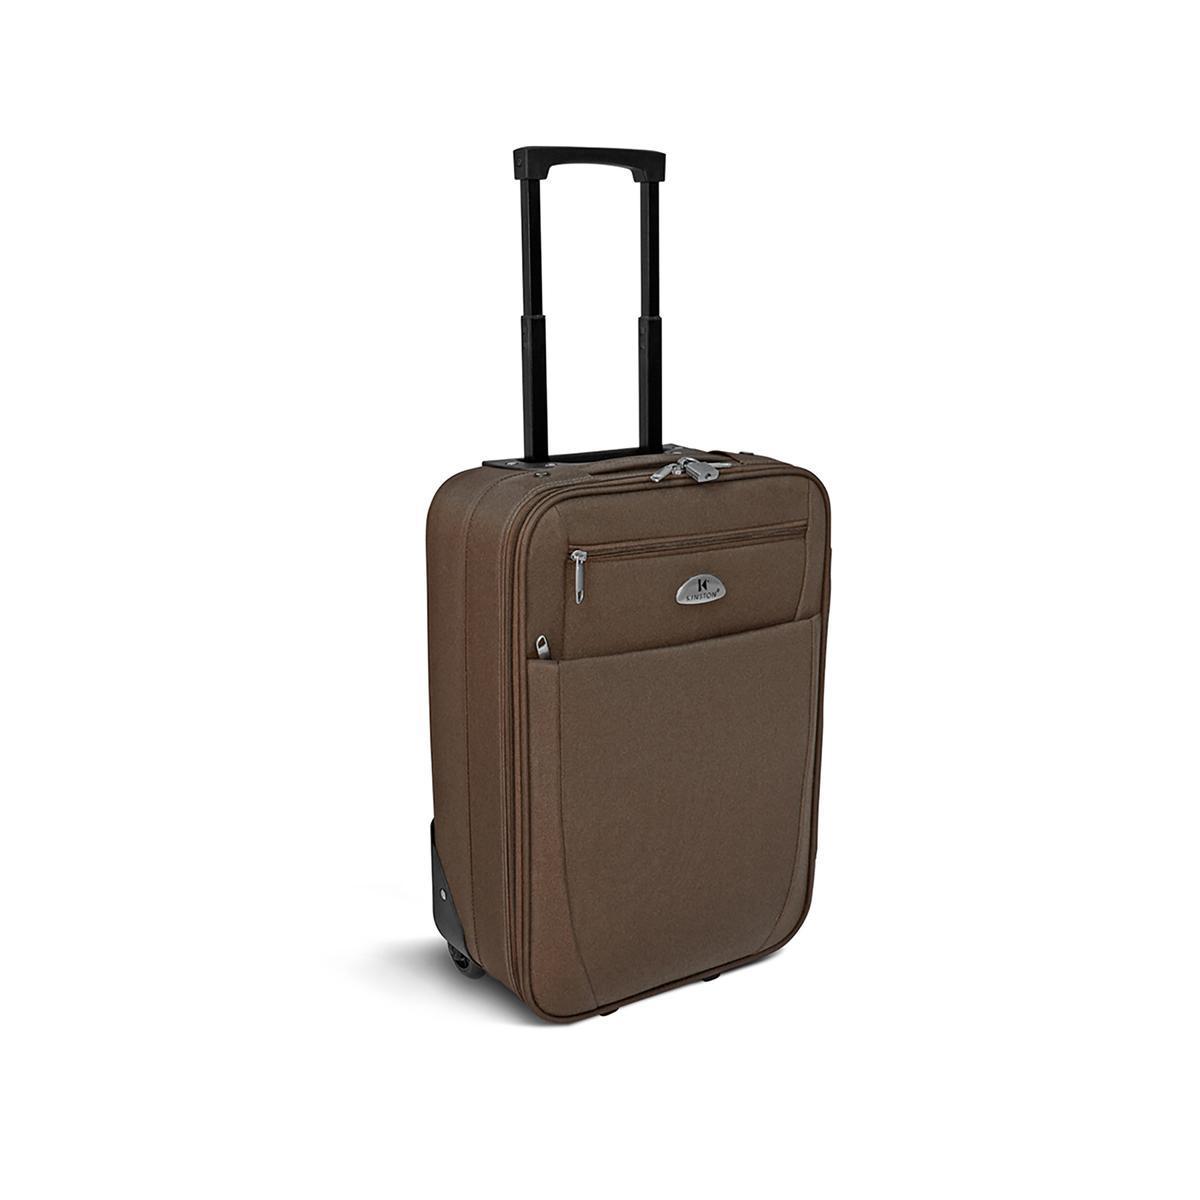 Valise cabine textile lowcost marron homme - H 50 x L 35 x 20 cm